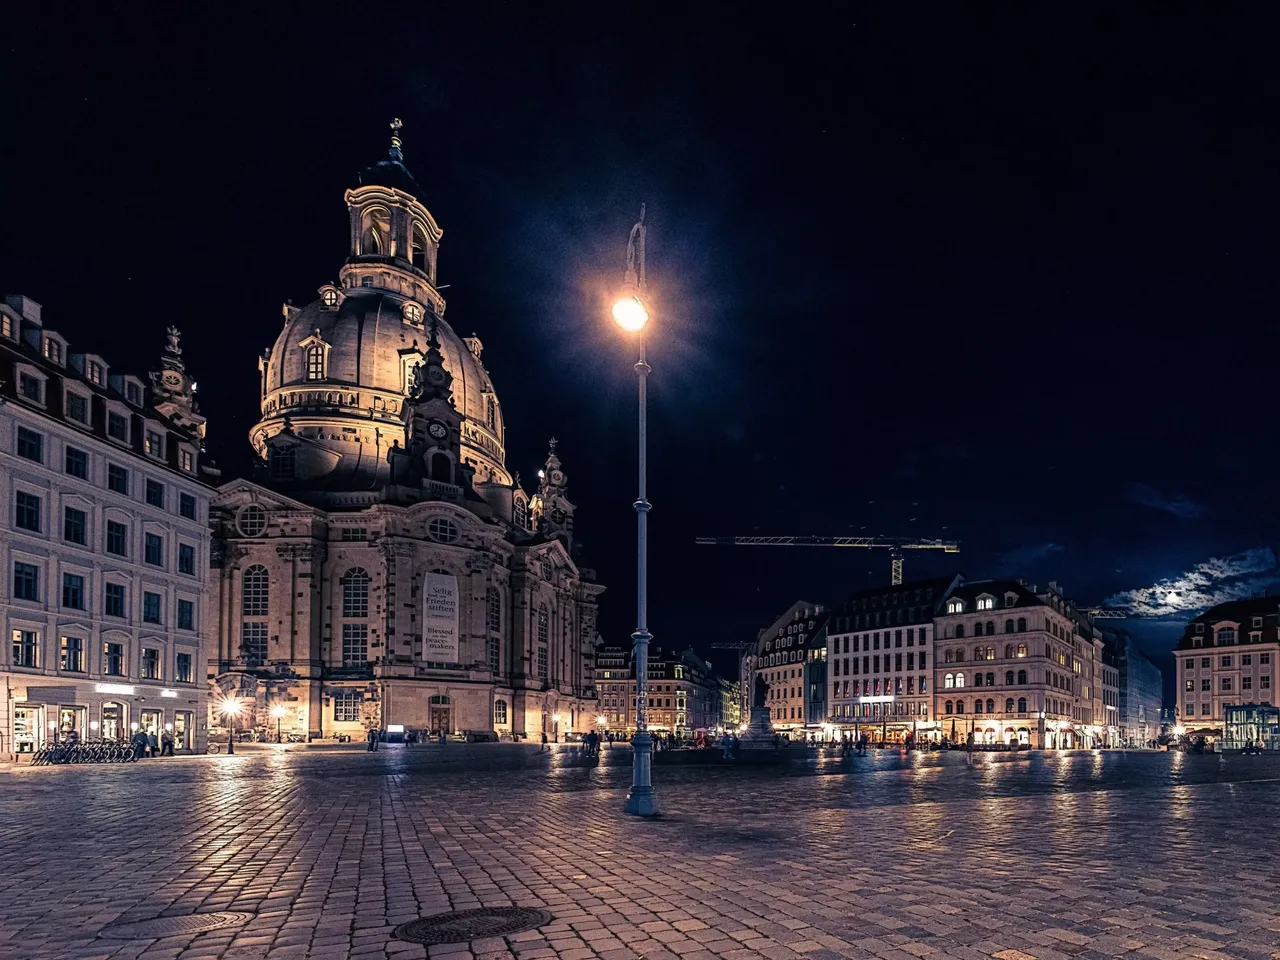 Es wird die hausInvest Immobilie Hotel de Saxe gegenüber der Frauenkirche in Dresden dargestellt.